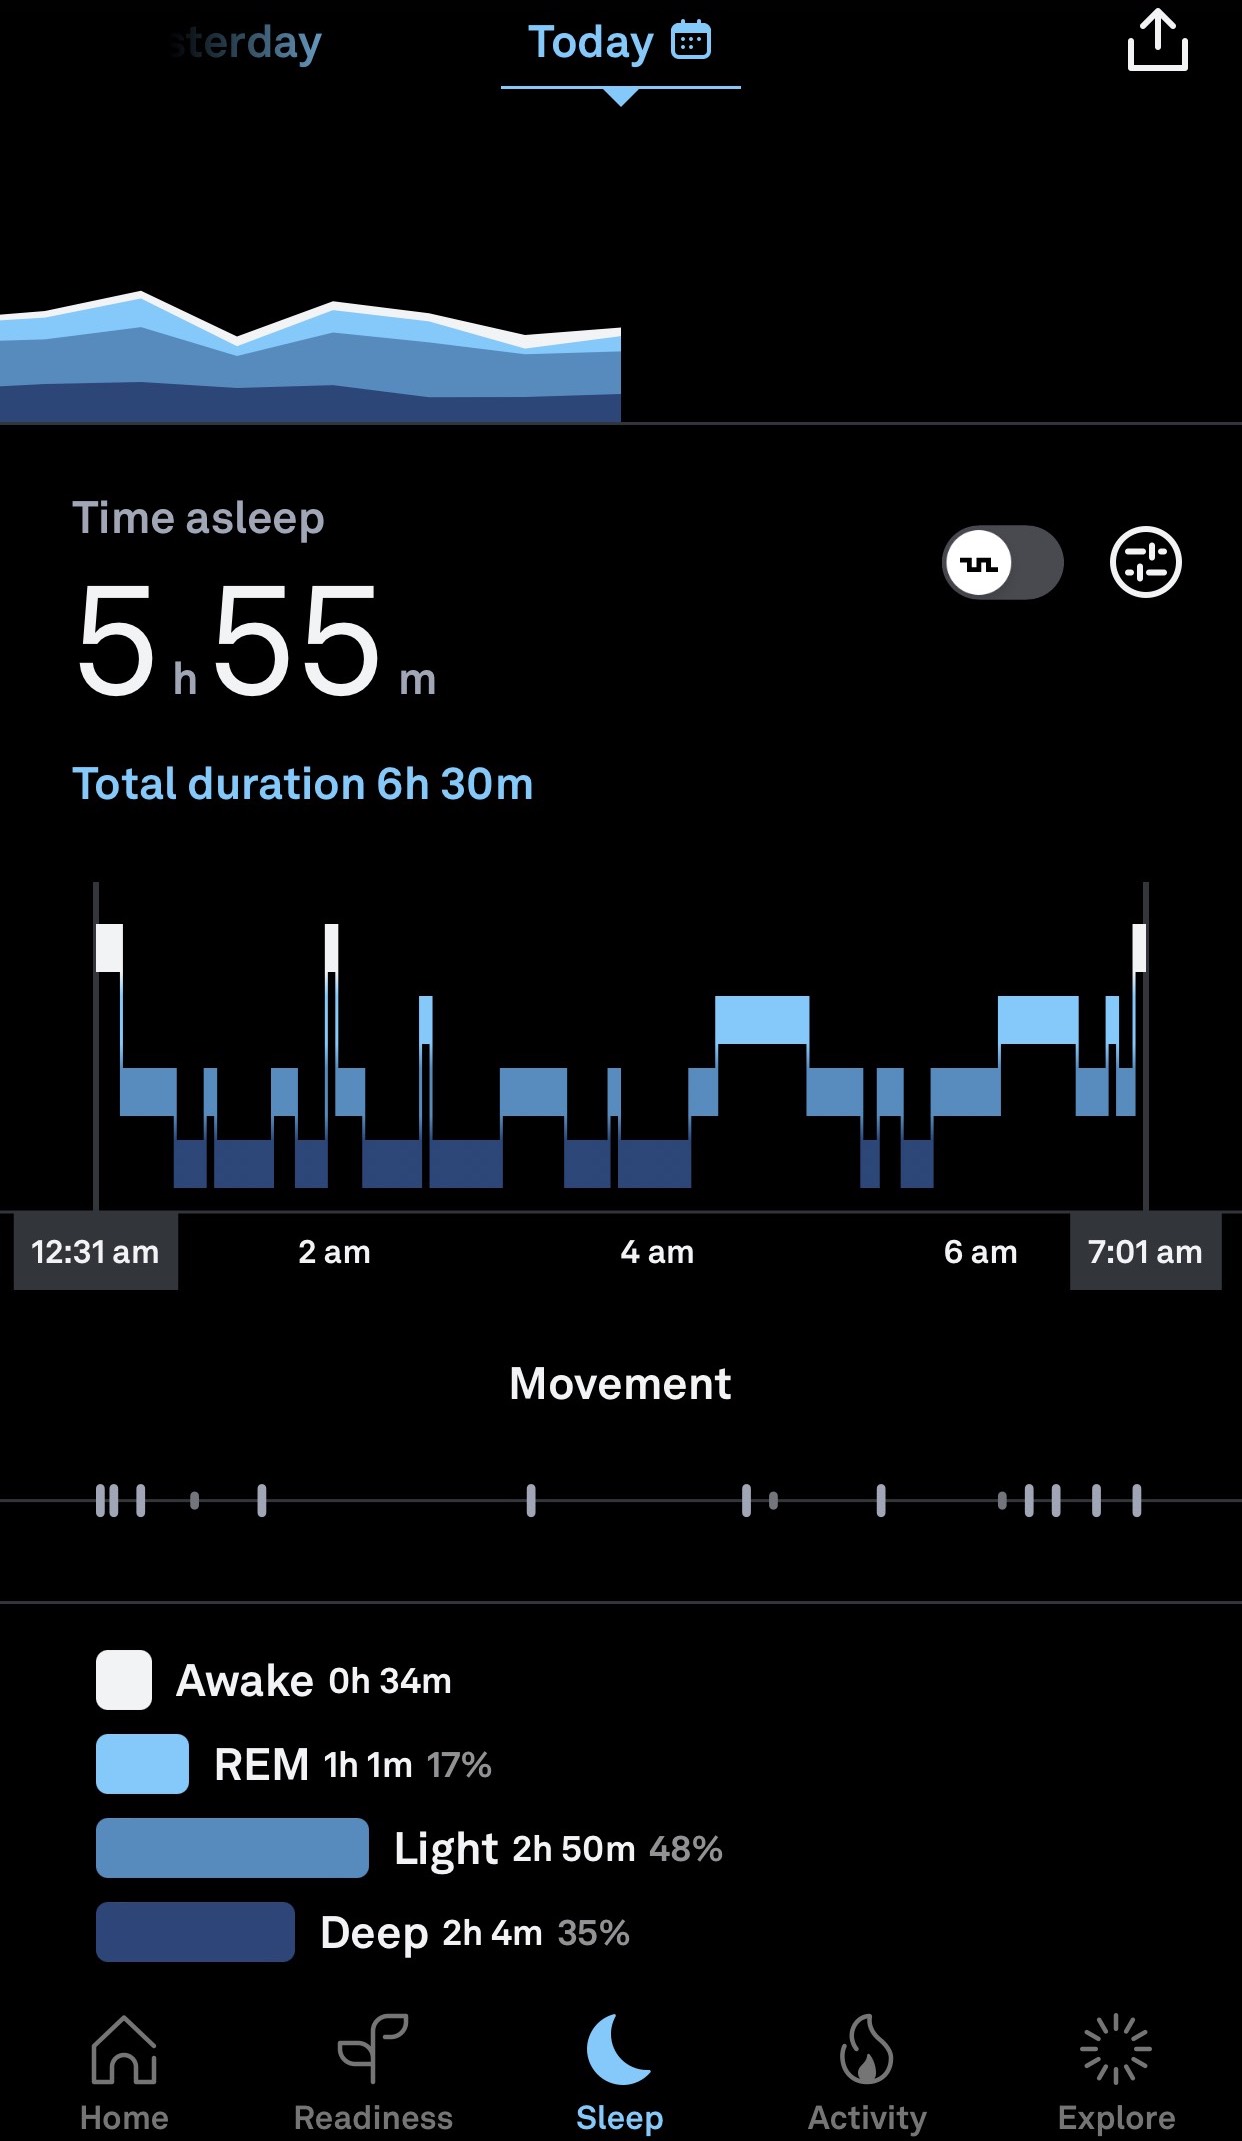 la scheda sonno di Oura App in cui viene visualizzato un ipnogramma (grafico delle fasi del sonno). Le diverse fasi (fase REM, sonno leggero e sonno profondo) vengono rappresentate con toni di blu diversi. Il periodo di veglia viene visualizzato in bianco